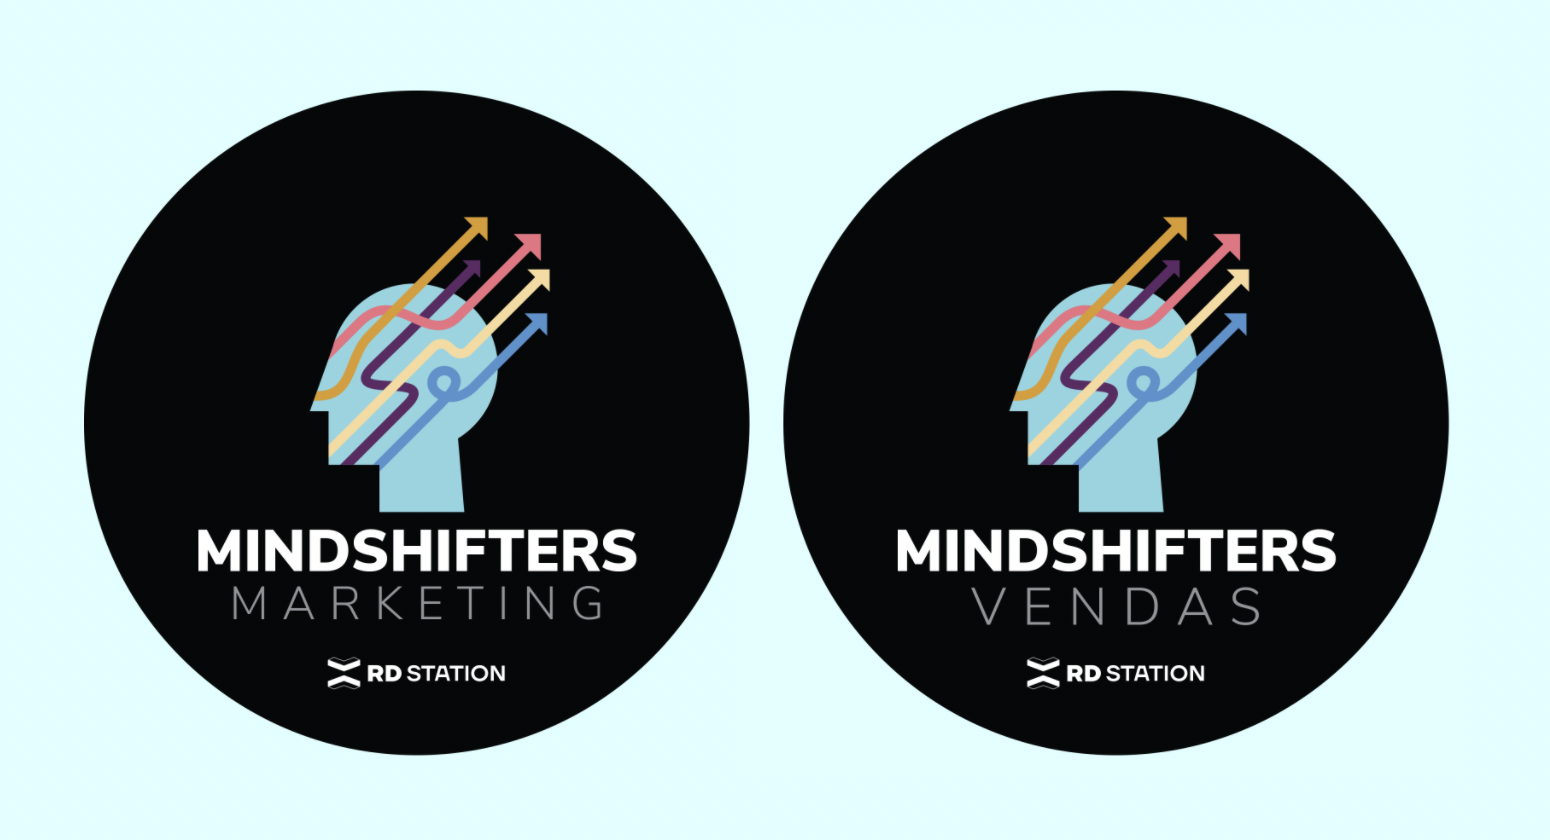 Mindshifters: mentes que transformam - conheça as pessoas eleitas!